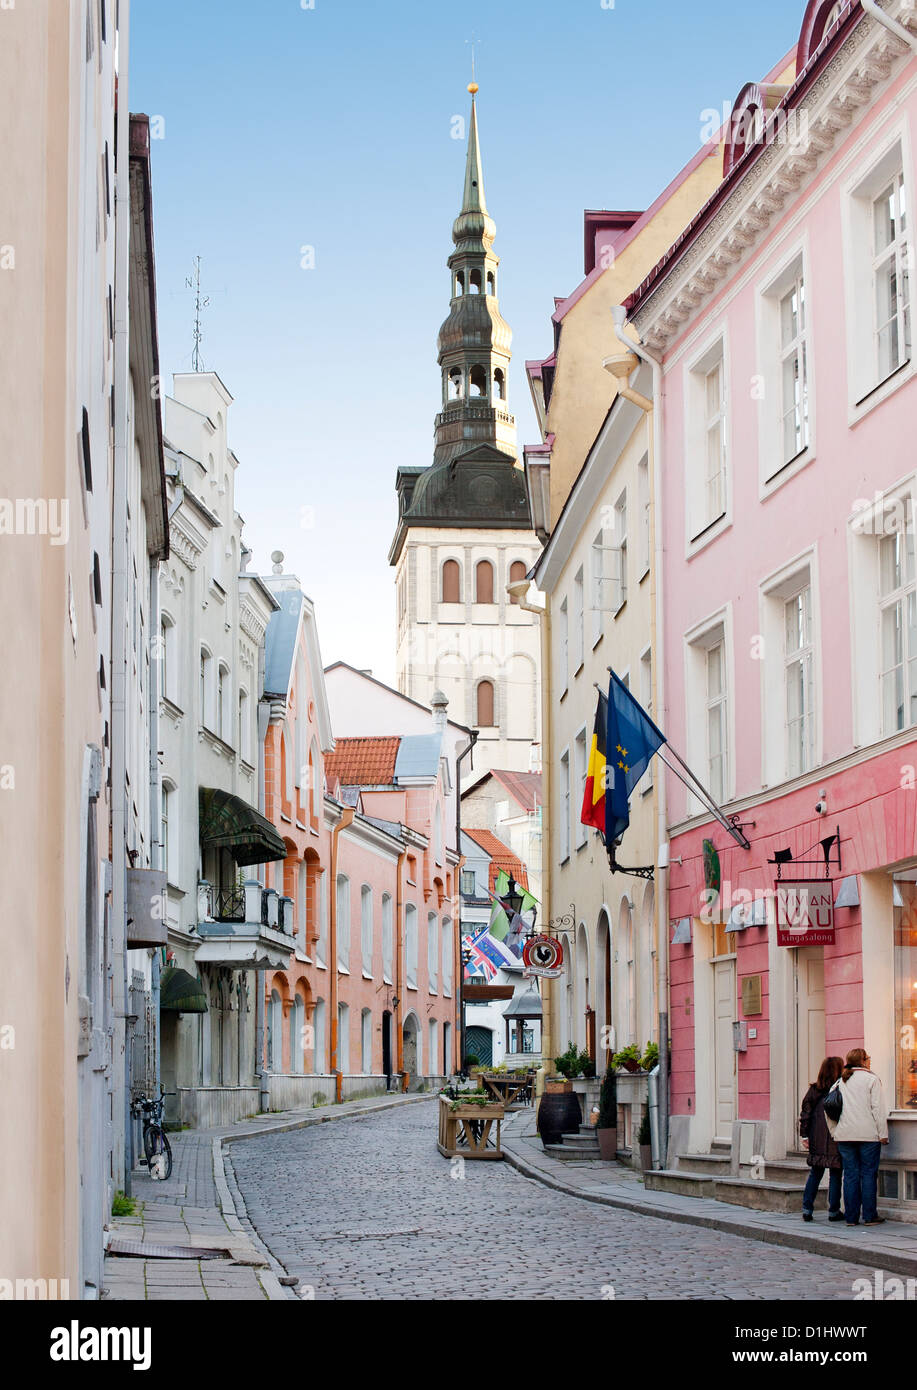 Vue de la Saint-Nicolas, le clocher de l'Église dans une rue de la vieille ville de Tallinn, capitale de l'Estonie. Banque D'Images